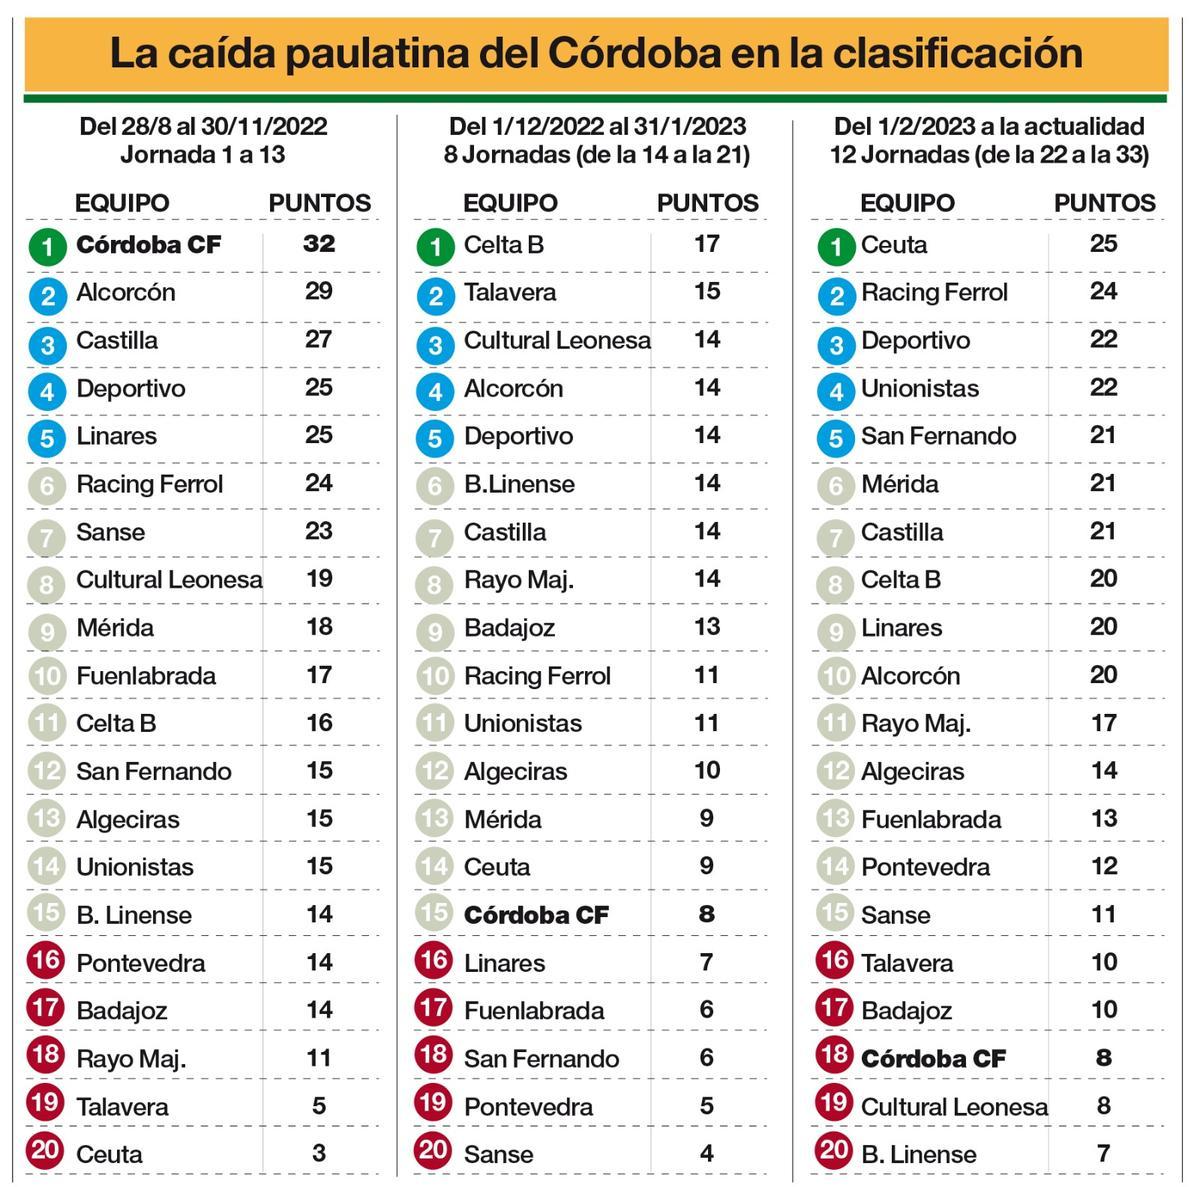 La caída en la clasificación del Córdoba CF no fue &quot;de golpe&quot;.